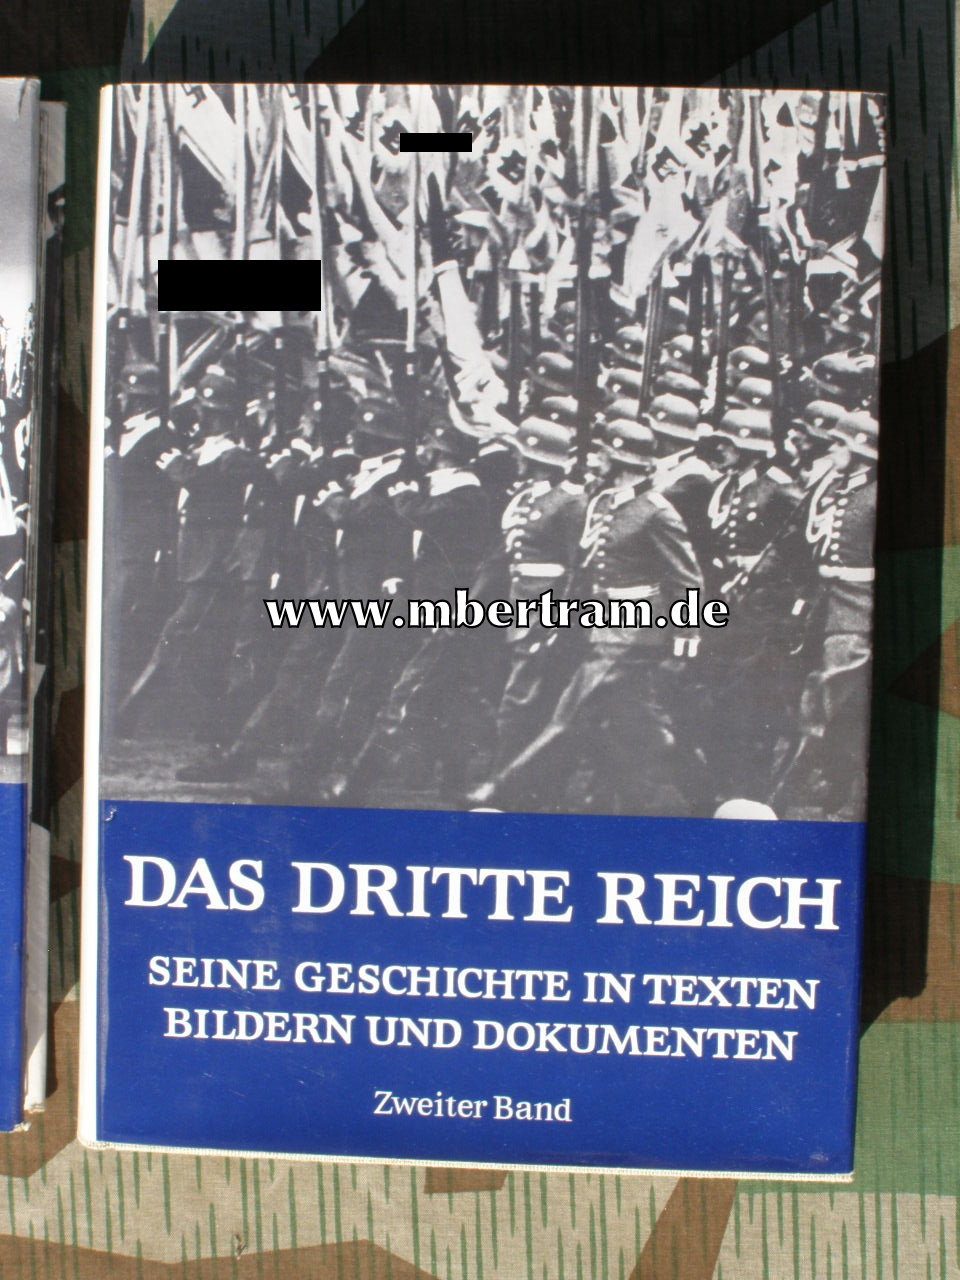 Das Dritte Reich. 1964, 2 Bd. 855 S. Schutzumschlag